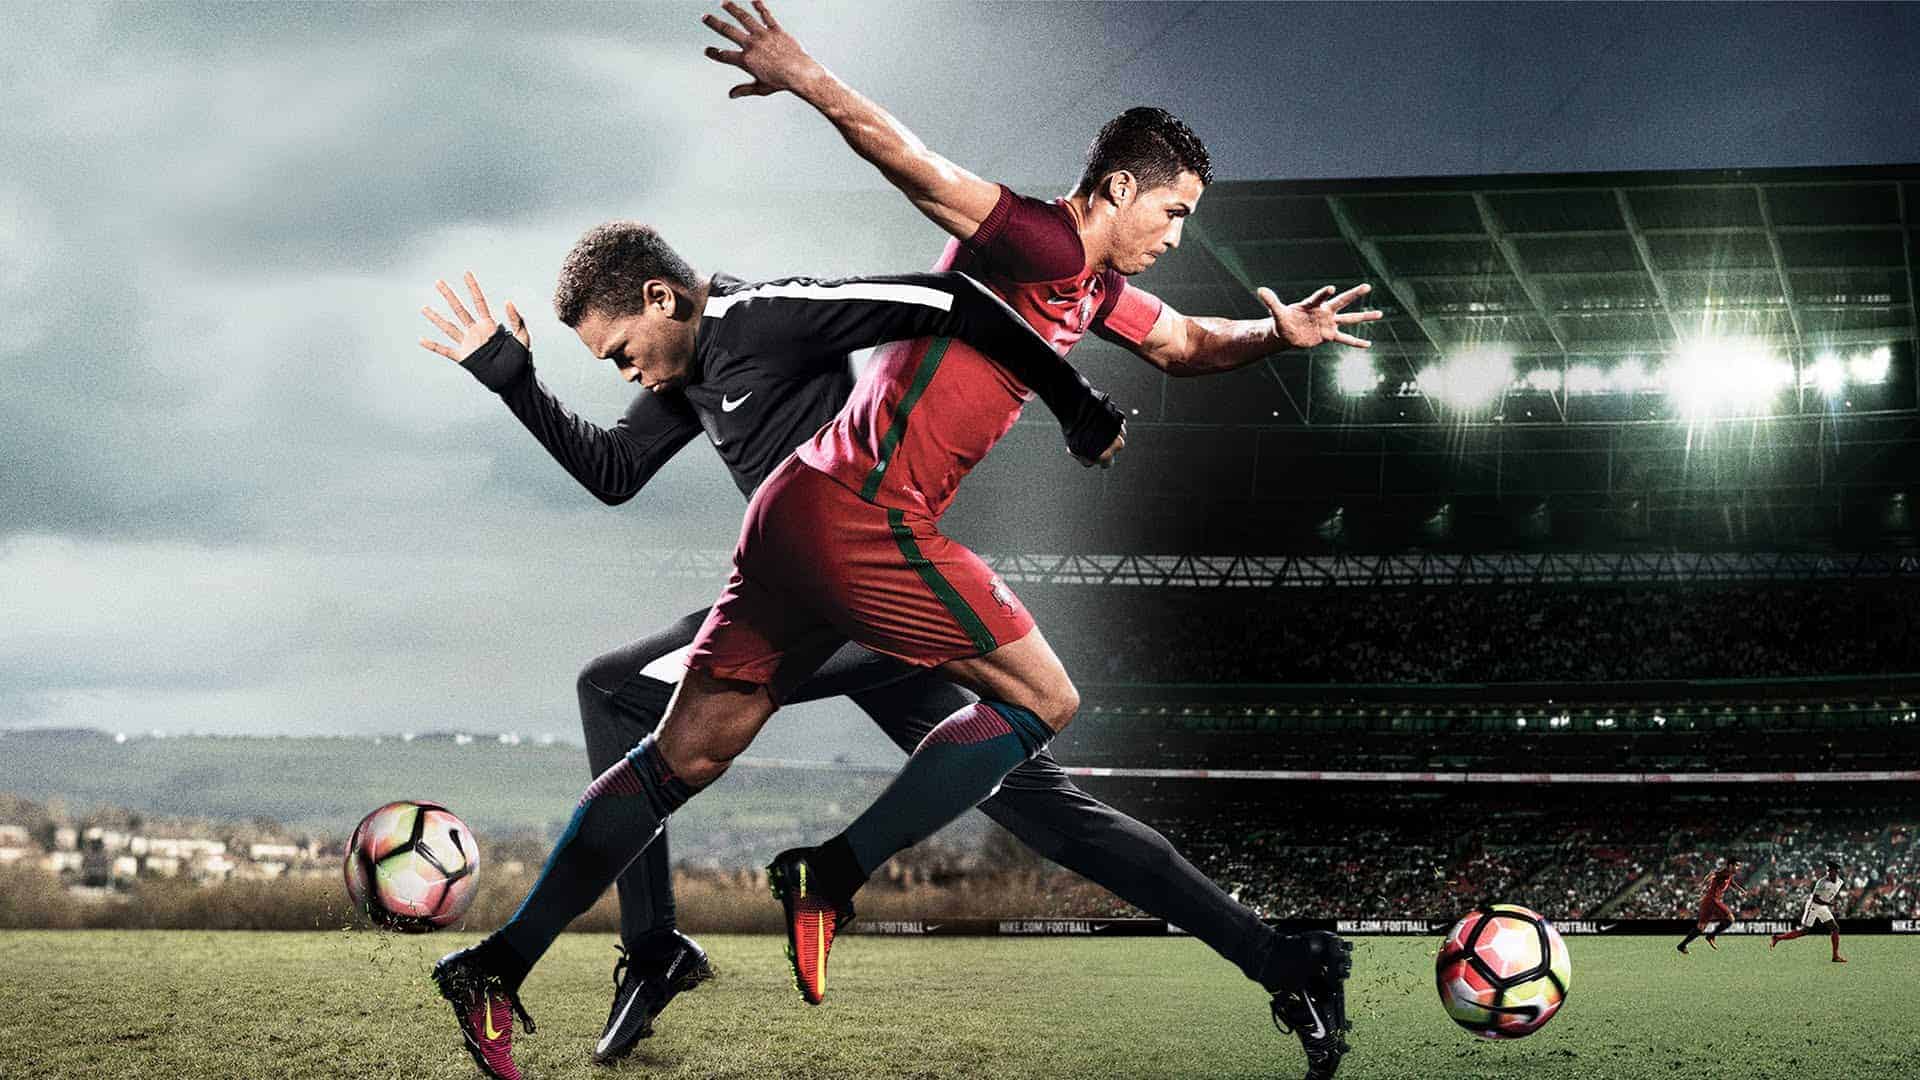 تقدم شركة Nike: The Switch مع كريستيانو رونالدو وهاري كين وأنتوني مارسيال